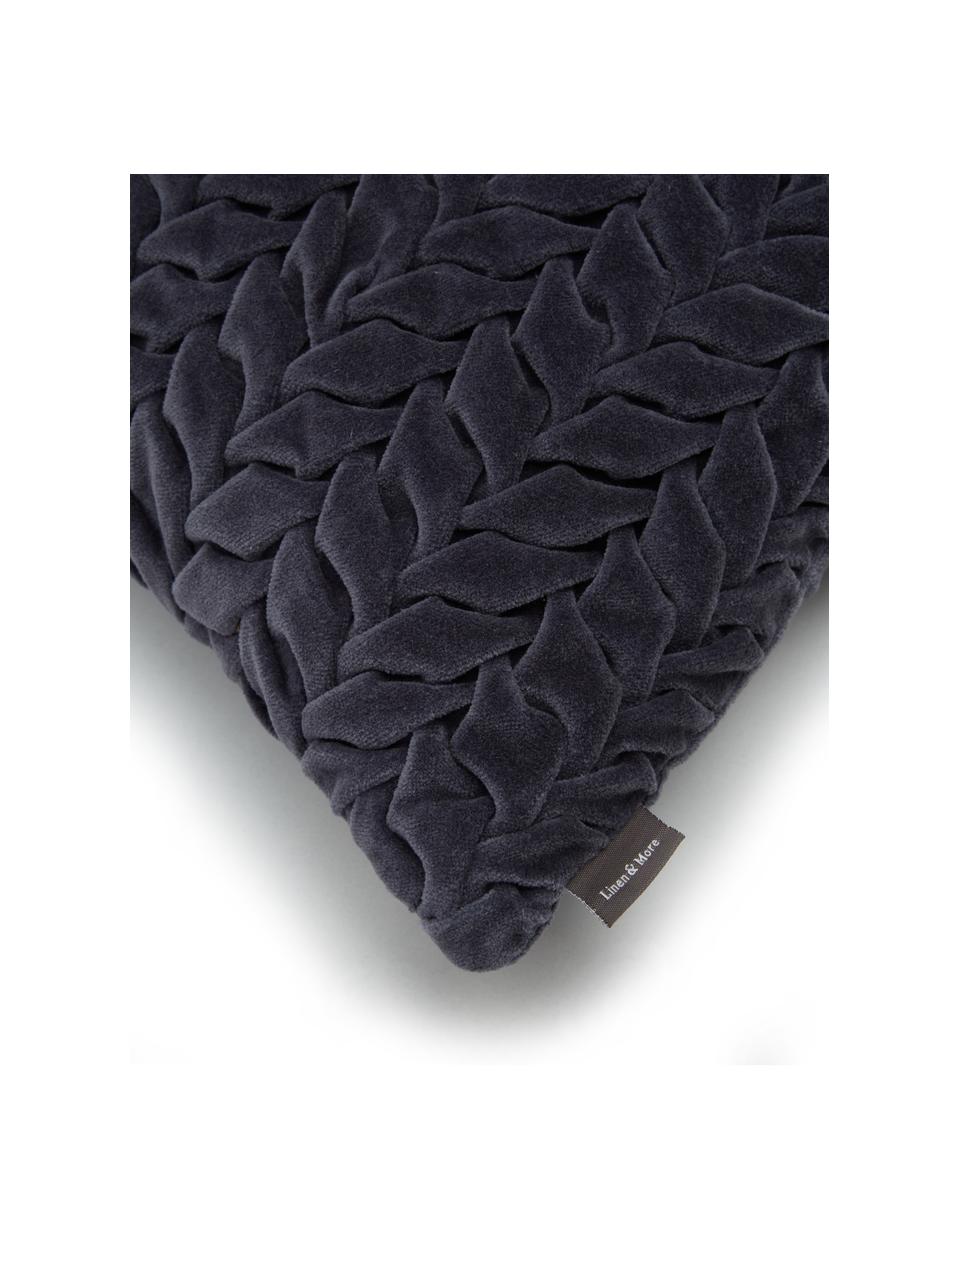 Samt-Kissen Smock in Dunkelgrau mit geraffter Oberfläche, mit Inlett, Bezug: 100% Baumwollsamt, Dunkelgrau, 30 x 50 cm